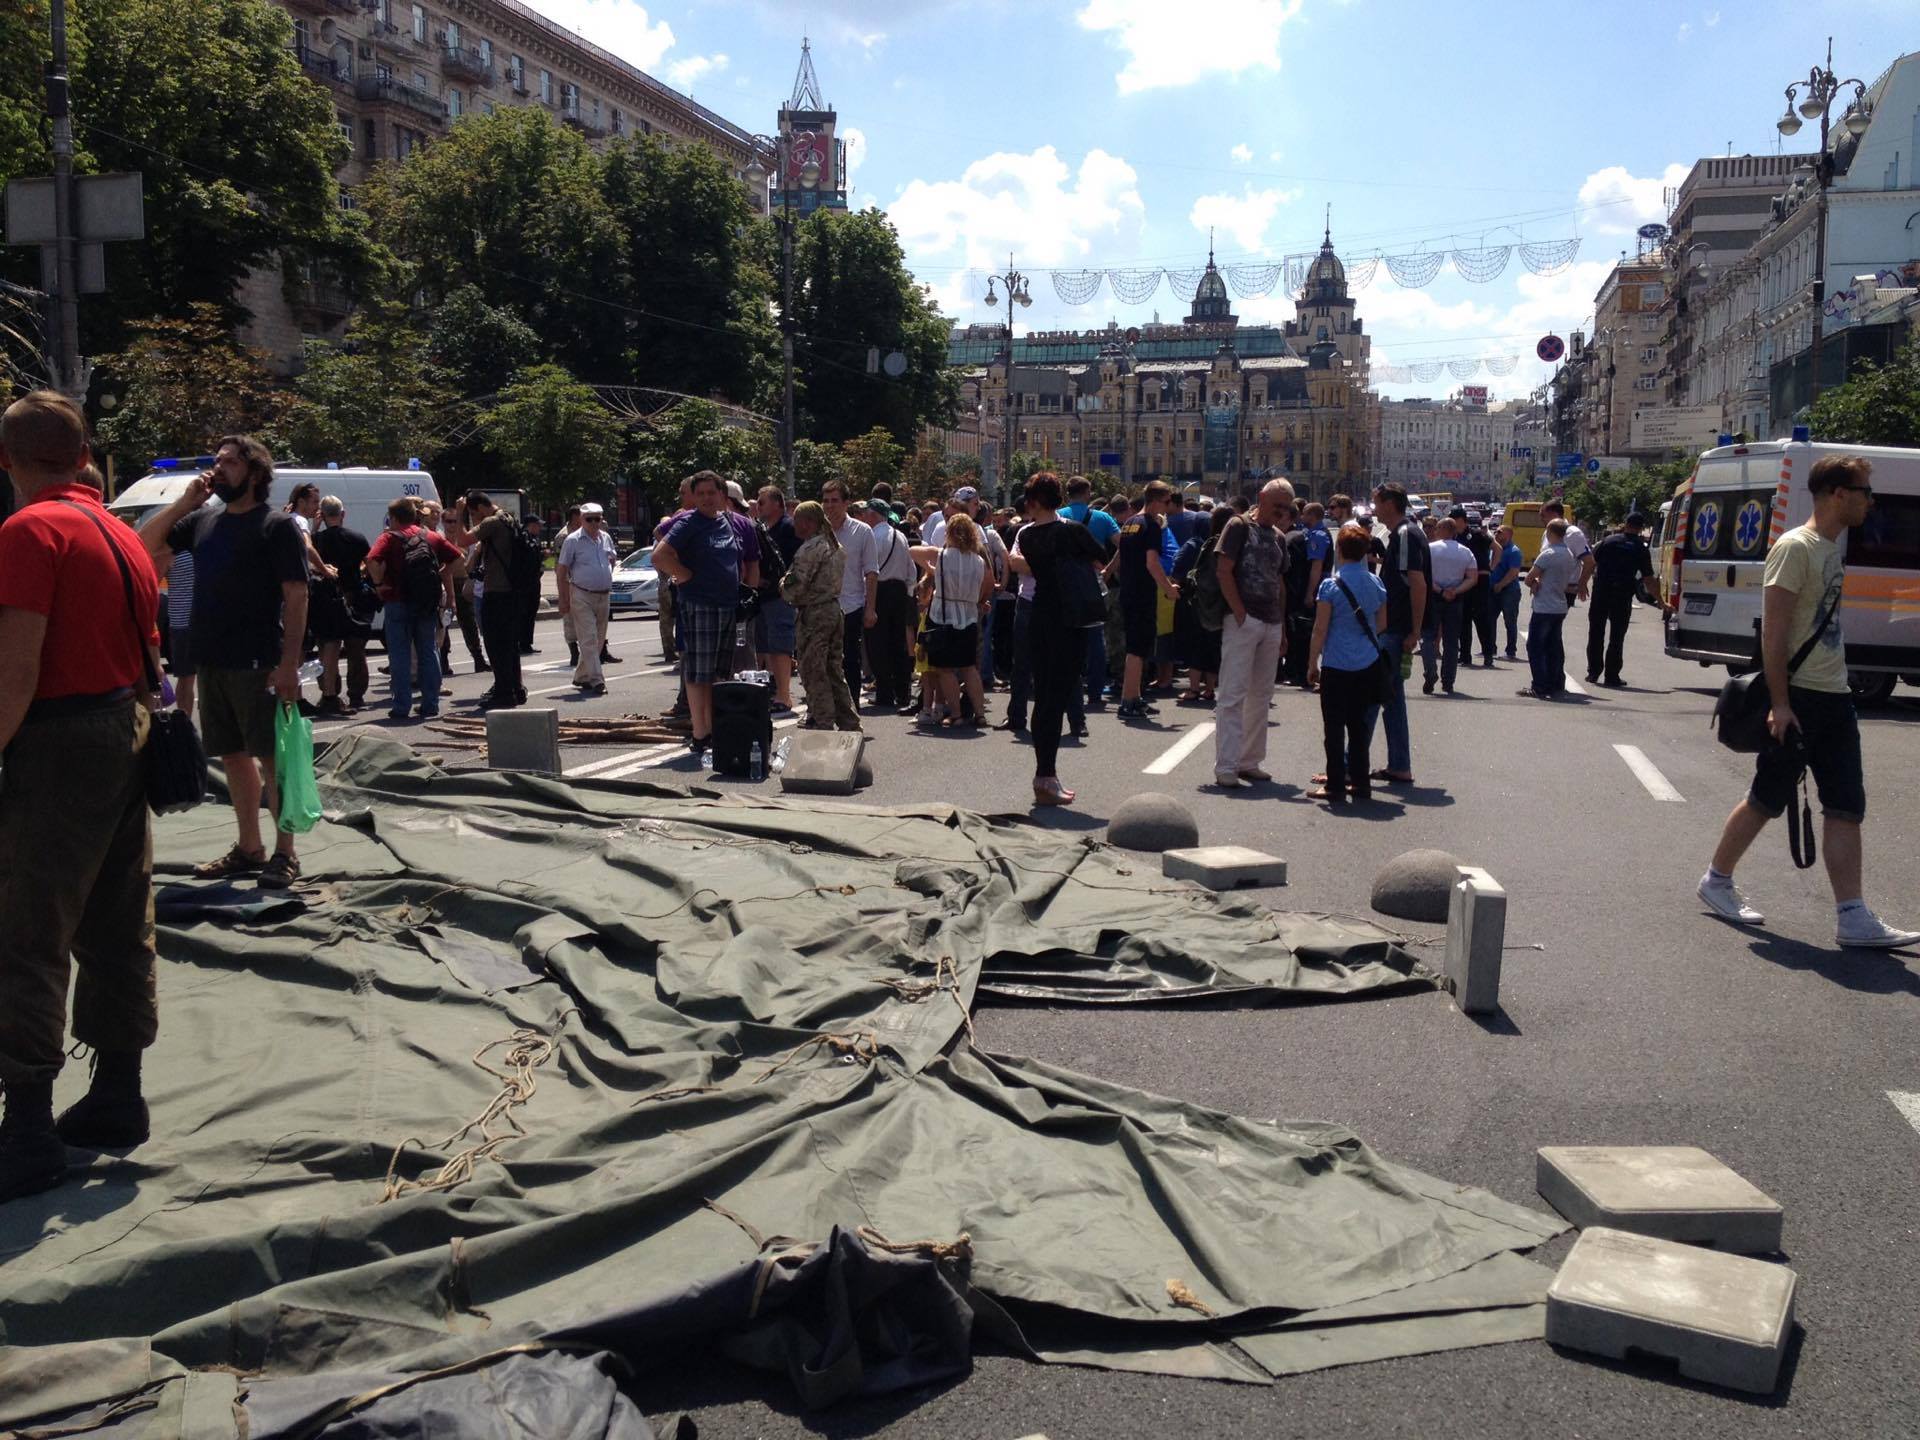 Крещатик перегородили военной палаткой, требуют освободить екс-комбата Савченко